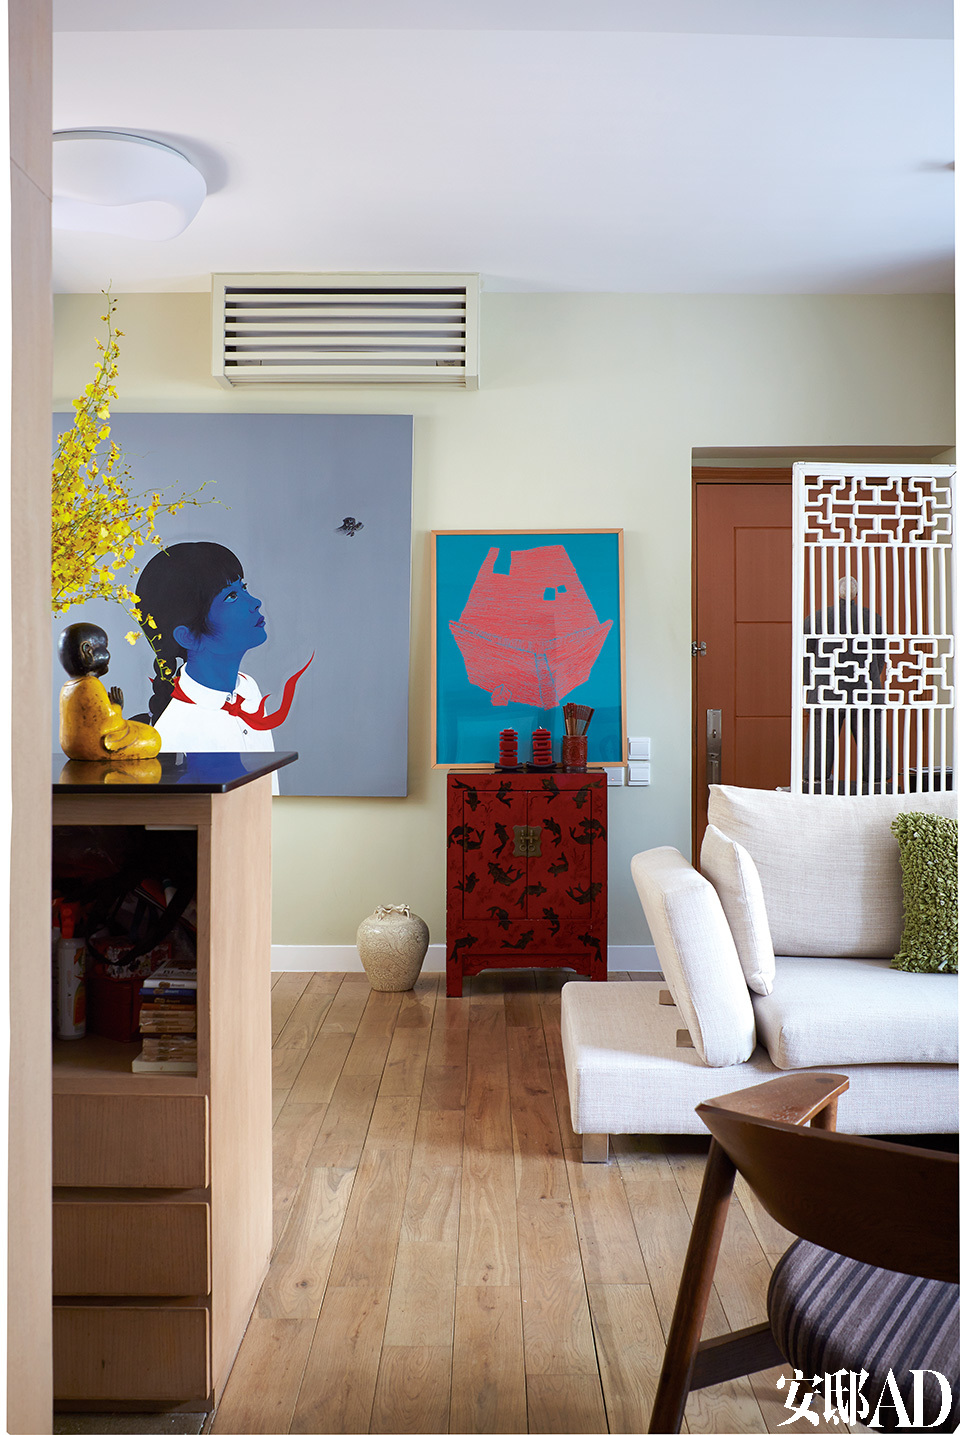 起居空间里结合了当代艺术、现代家具和一些中式元素，完全是东方遇上西方的一场精彩对话！绿玉色的墙上挂着一幅以中国小女孩为主题的油画，是由中国艺术家房辉创作的。白色矮沙发与红色中式边柜，再加上一抹亮黄色，整个起居室流露出轻松又活力十 足的气氛。